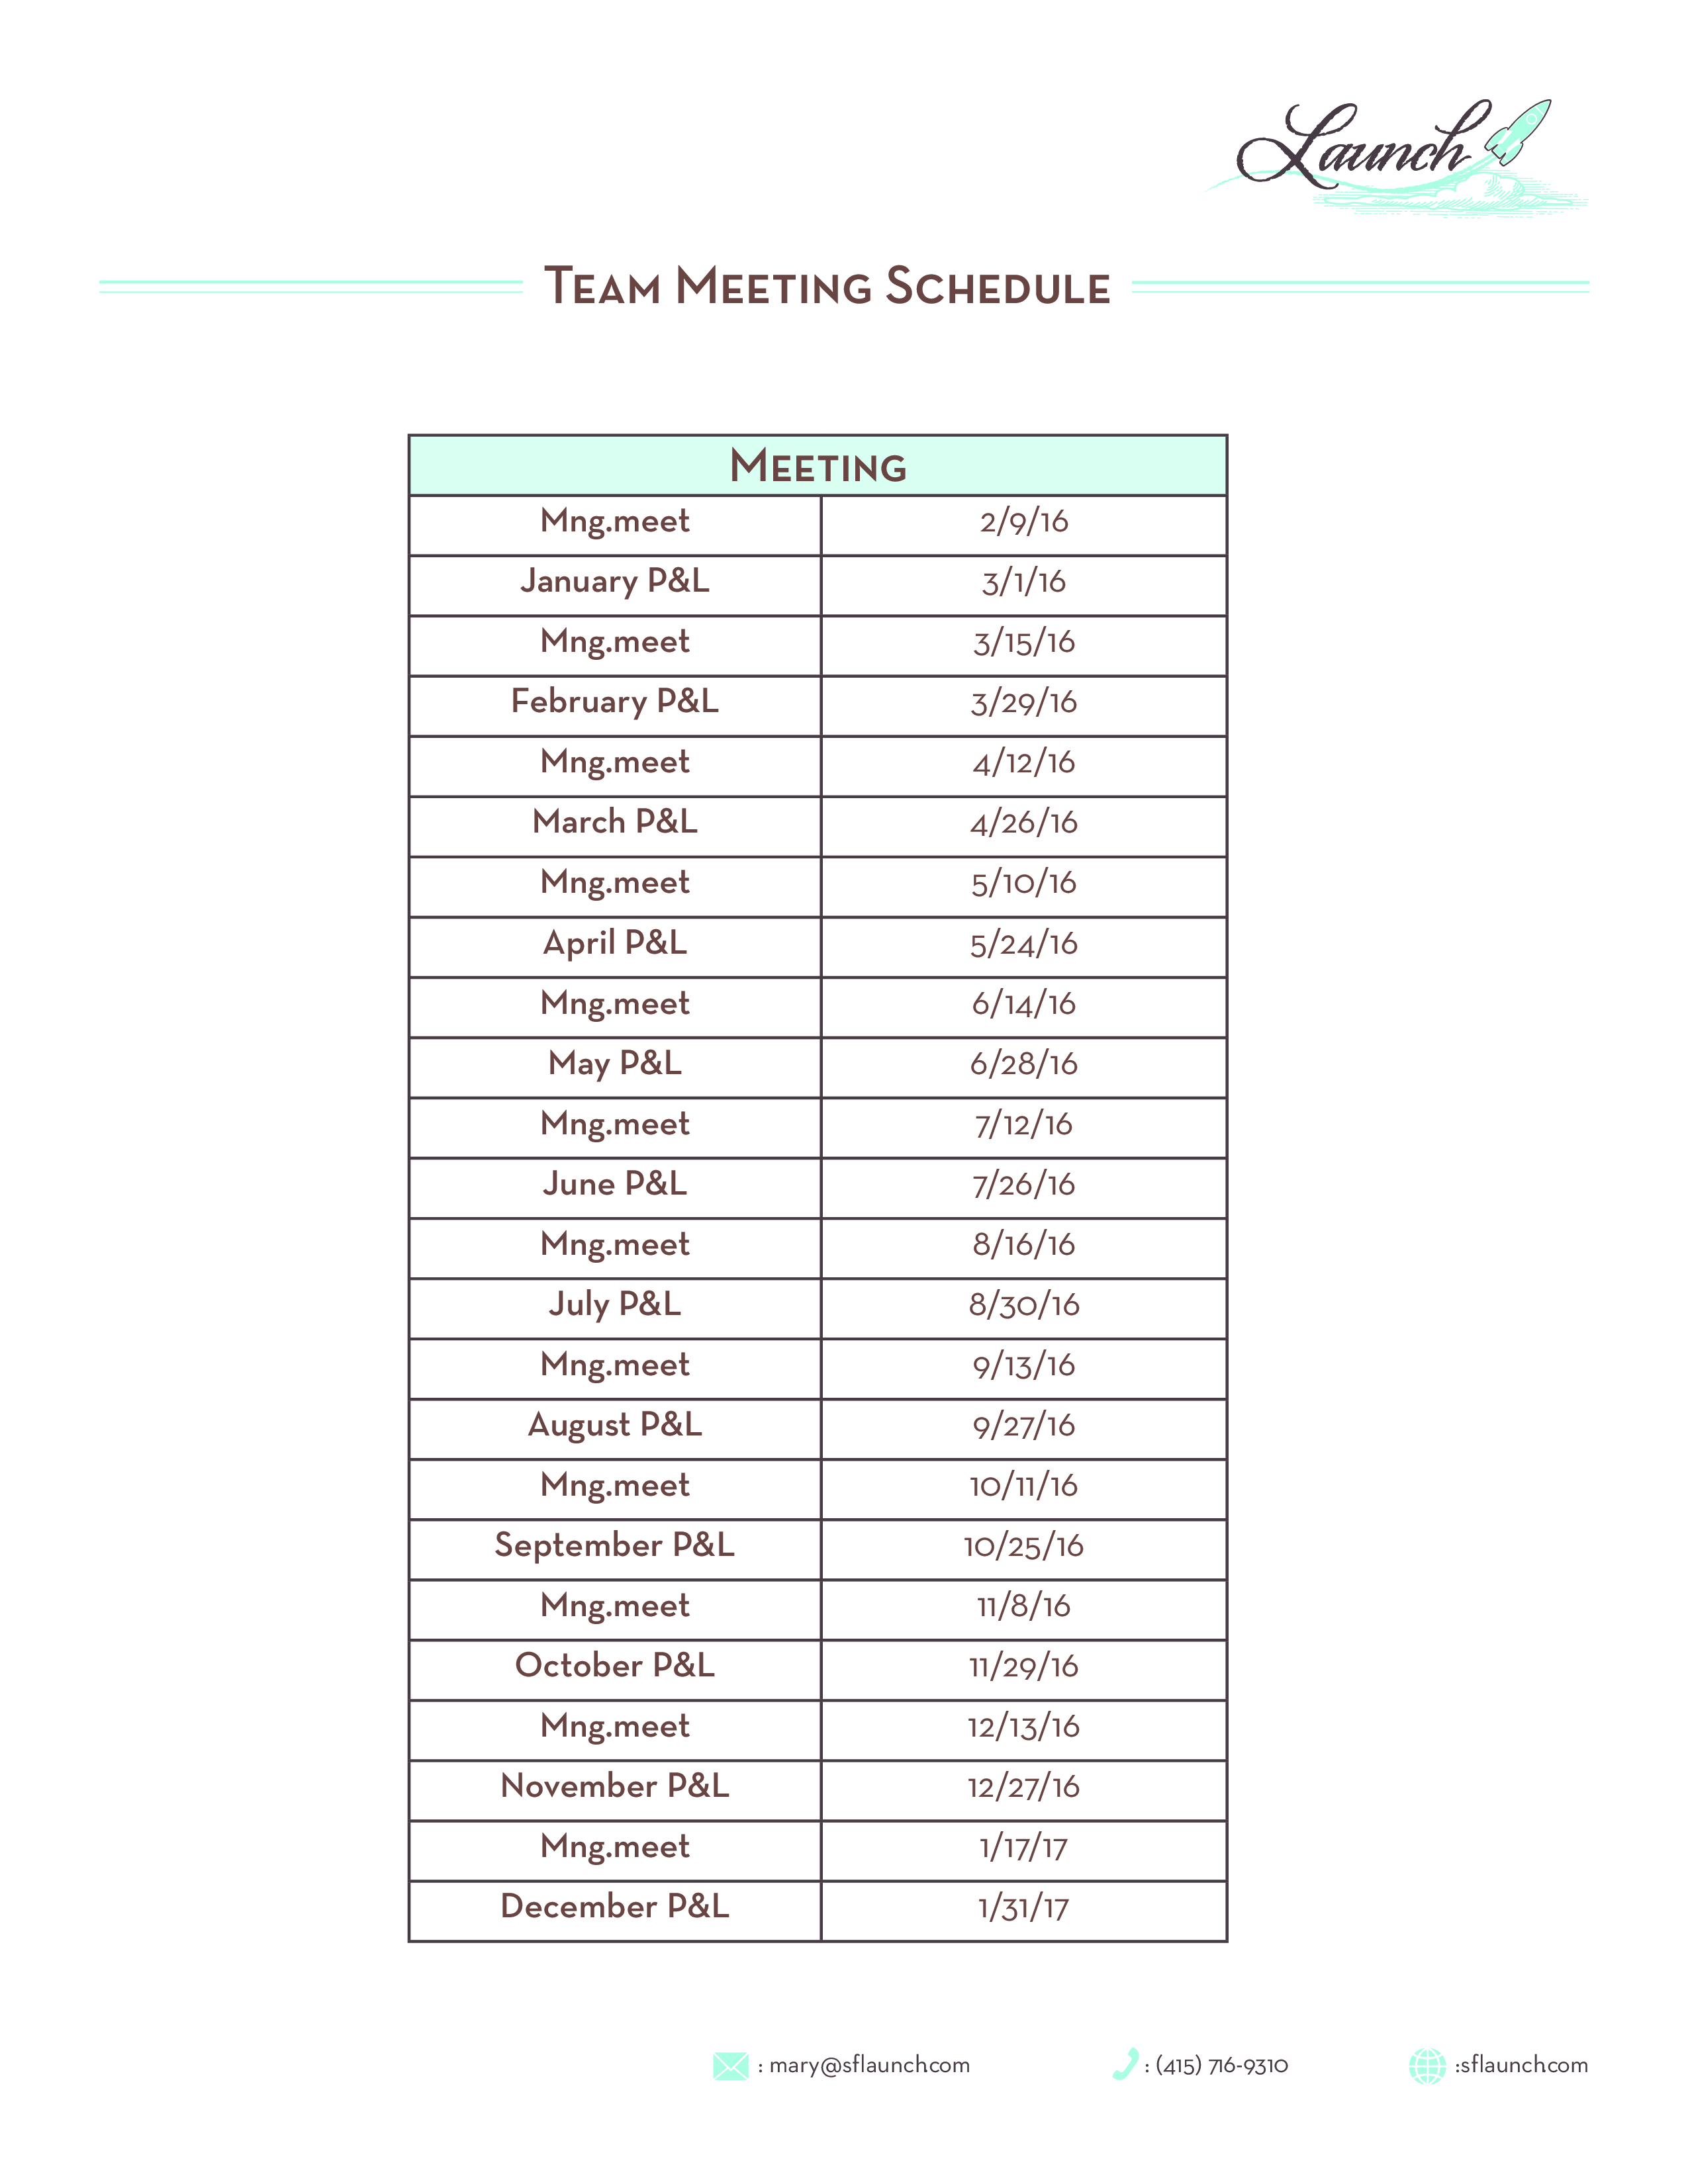 team meeting schedule plantilla imagen principal